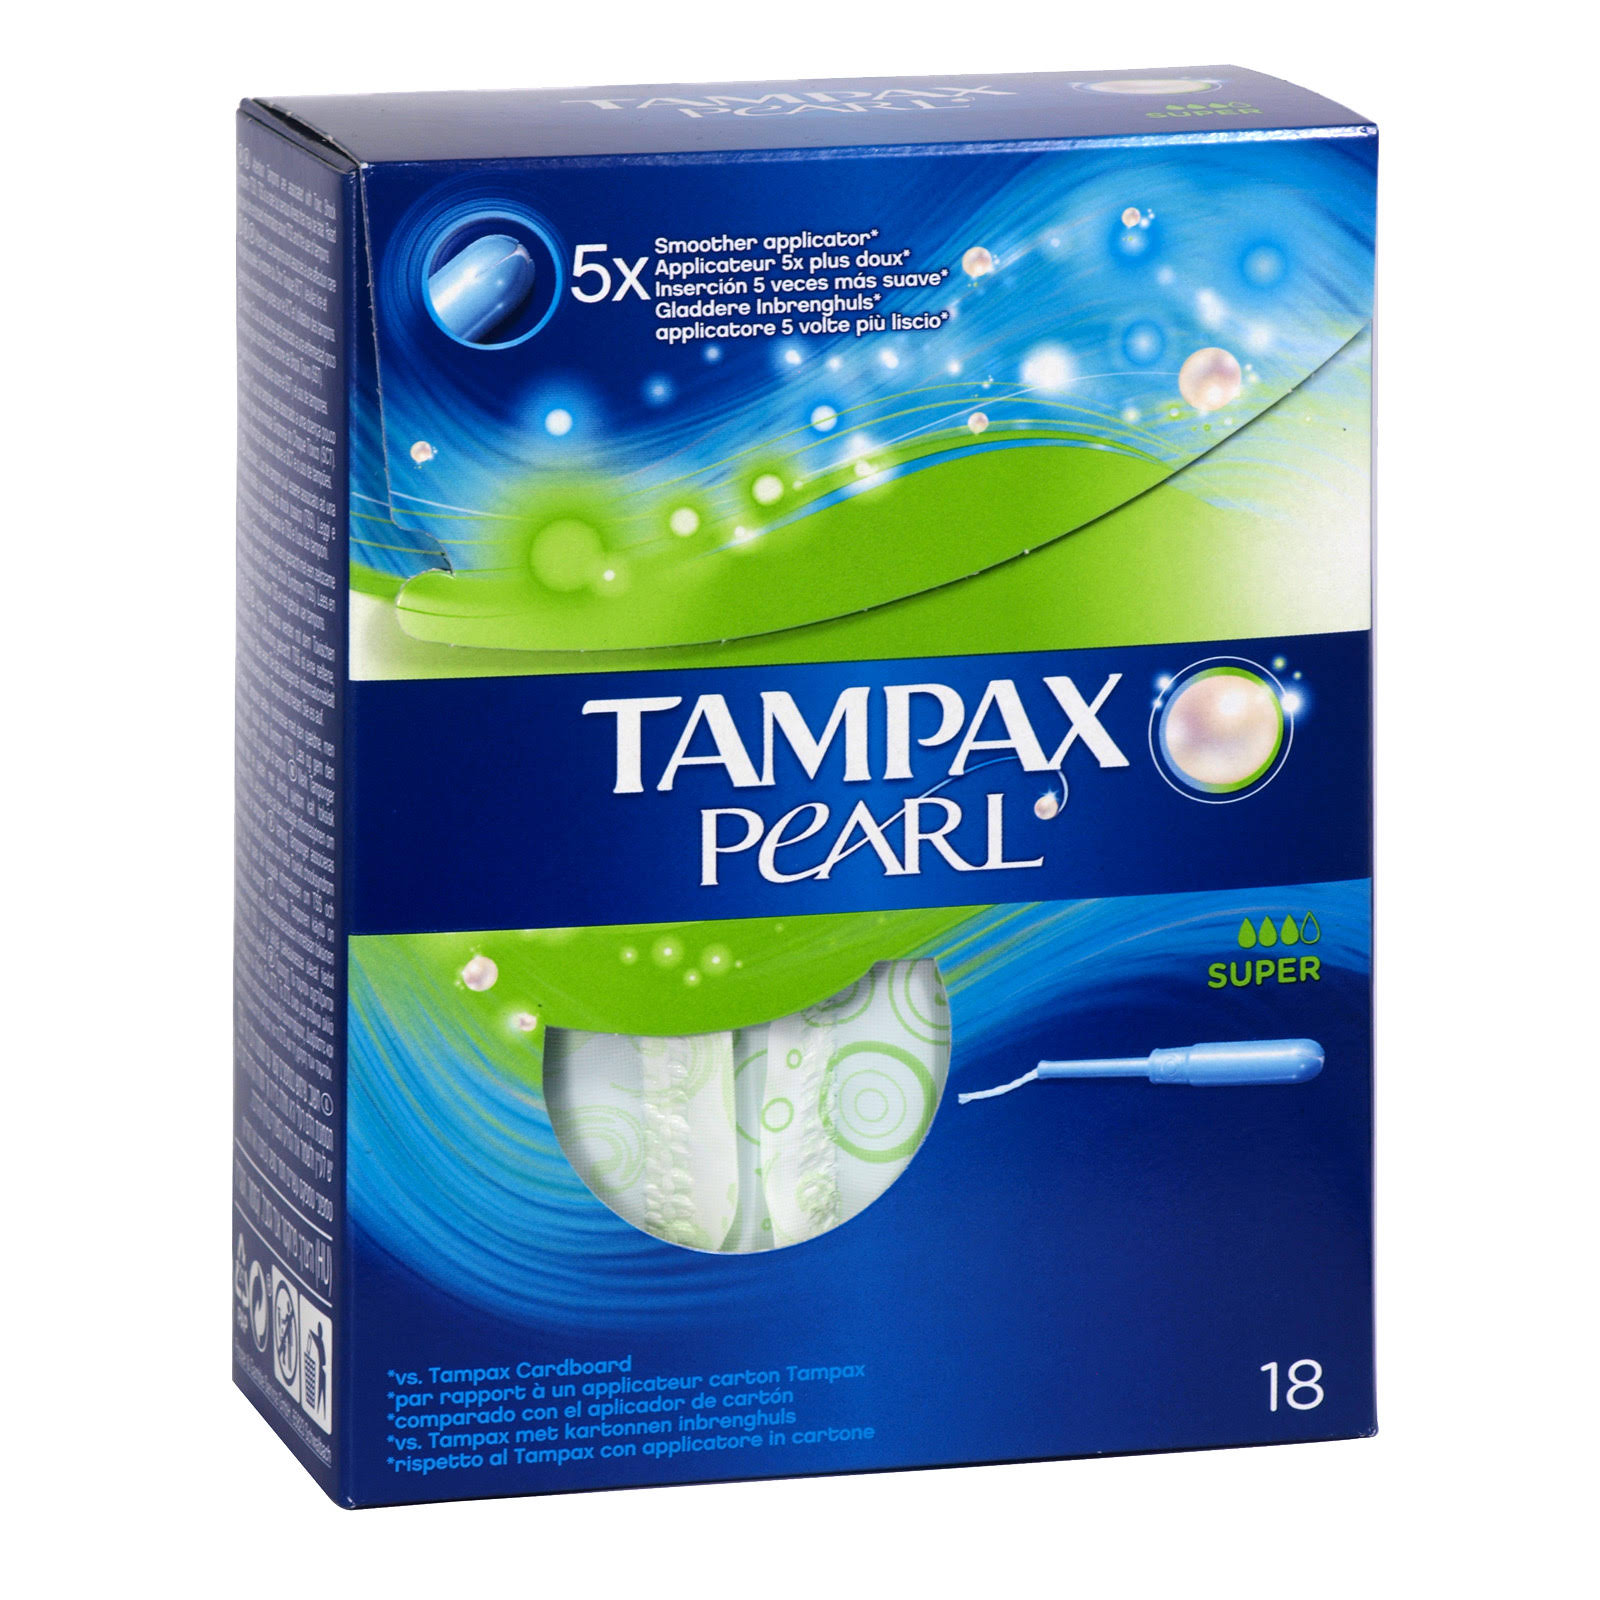 Tampax Pearl Tampons - Super, 18pk